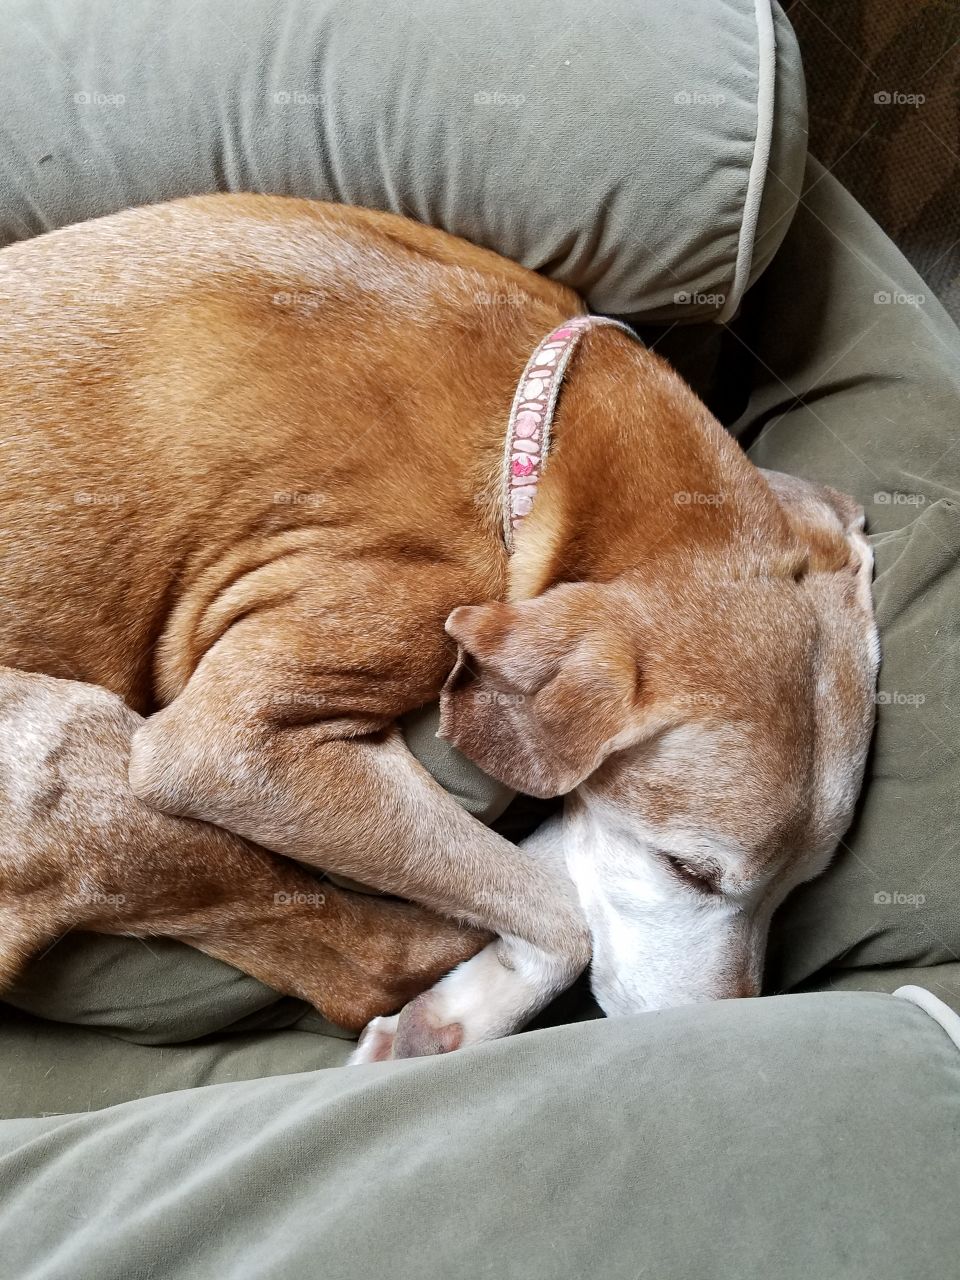 Older Vizsla dog curled up in her bed sleeping.